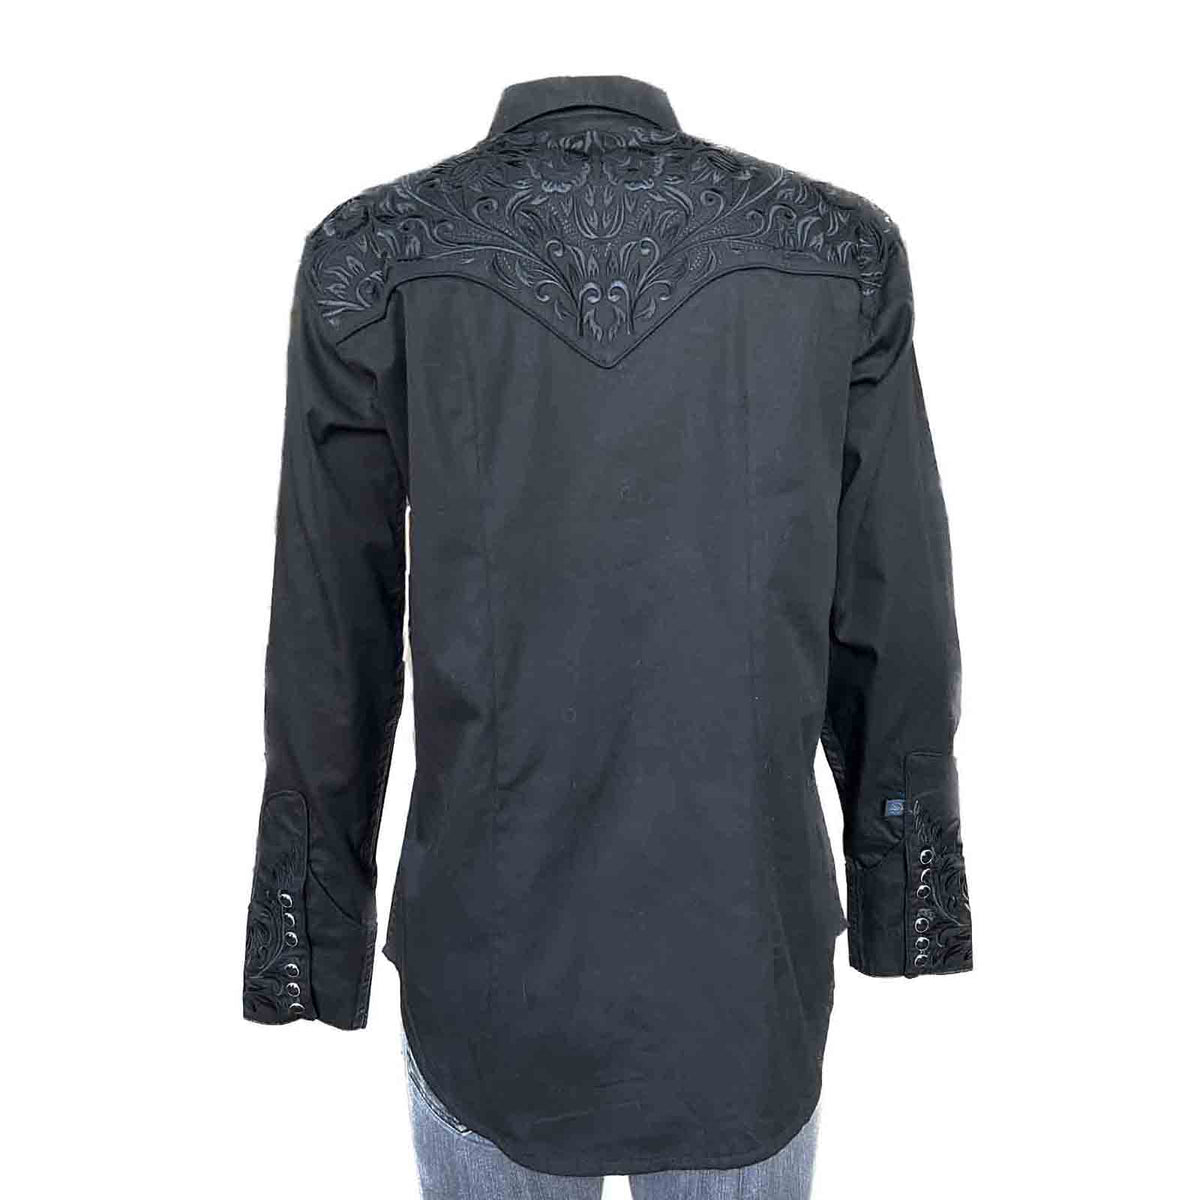 LUCKY BRAND Western Shirt True Indigo Denim Black Embroidered Floral  Women's XS